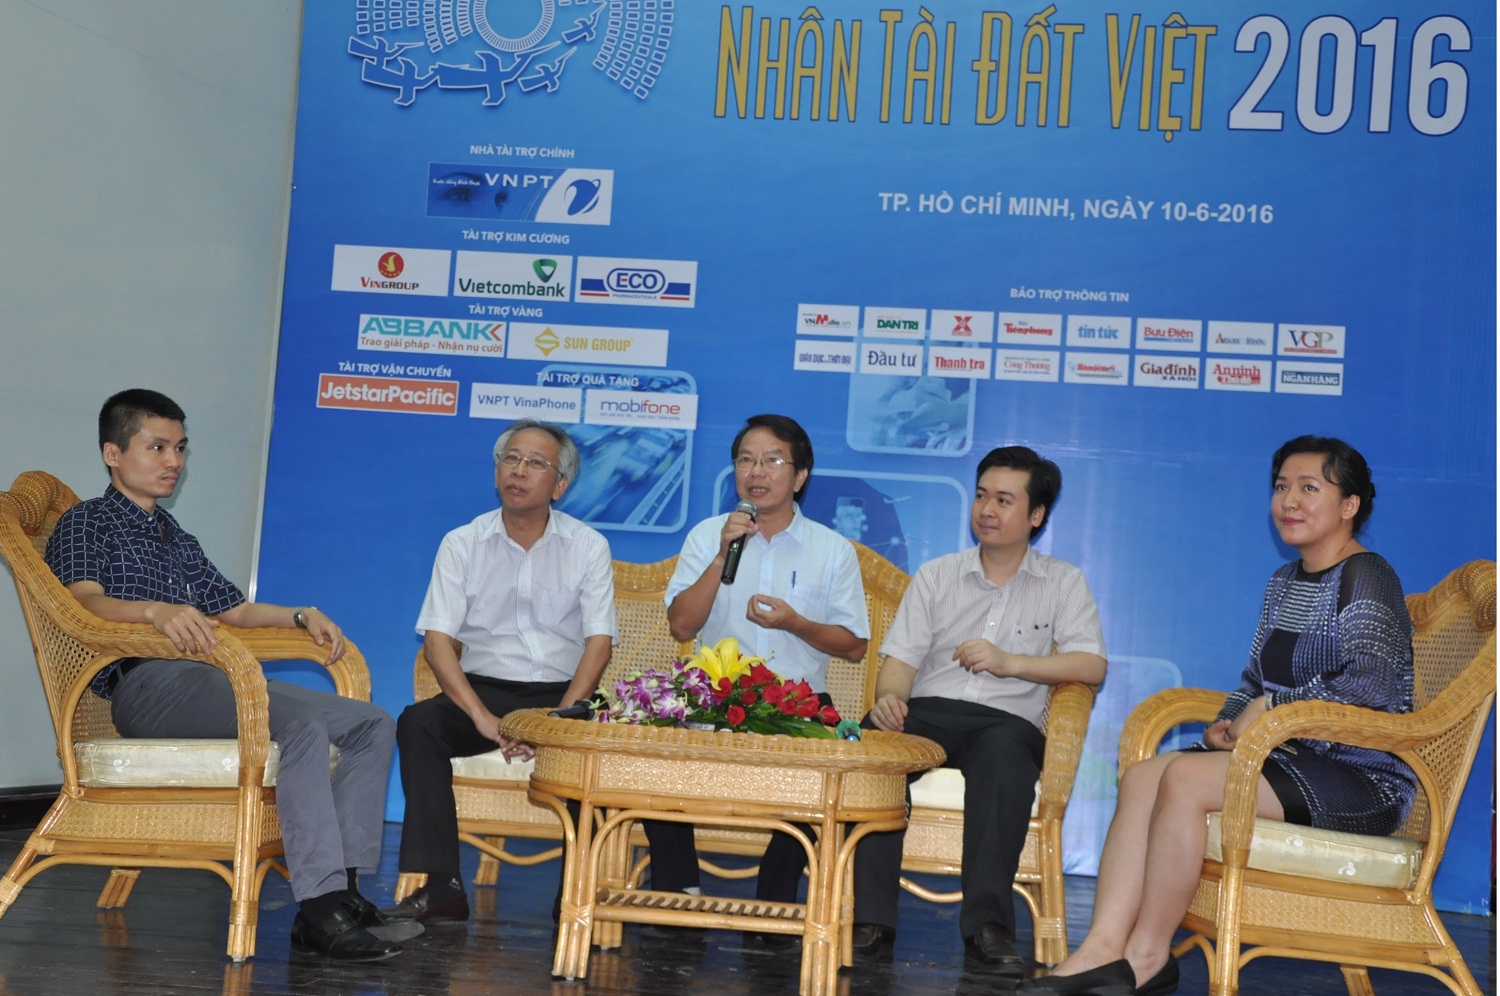 Nhân tài đất Việt 2016: “Miền đất hứa” cho khởi nghiệp